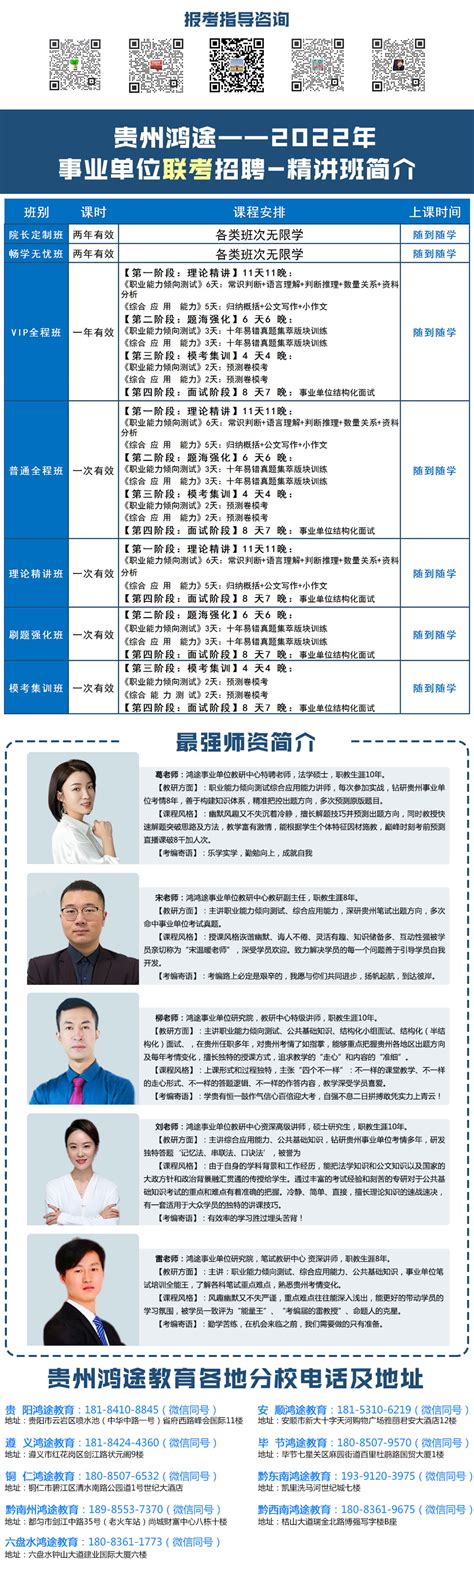 2022年贵州5.21事业单位联考笔试培训 - 163贵州人事考试信息网